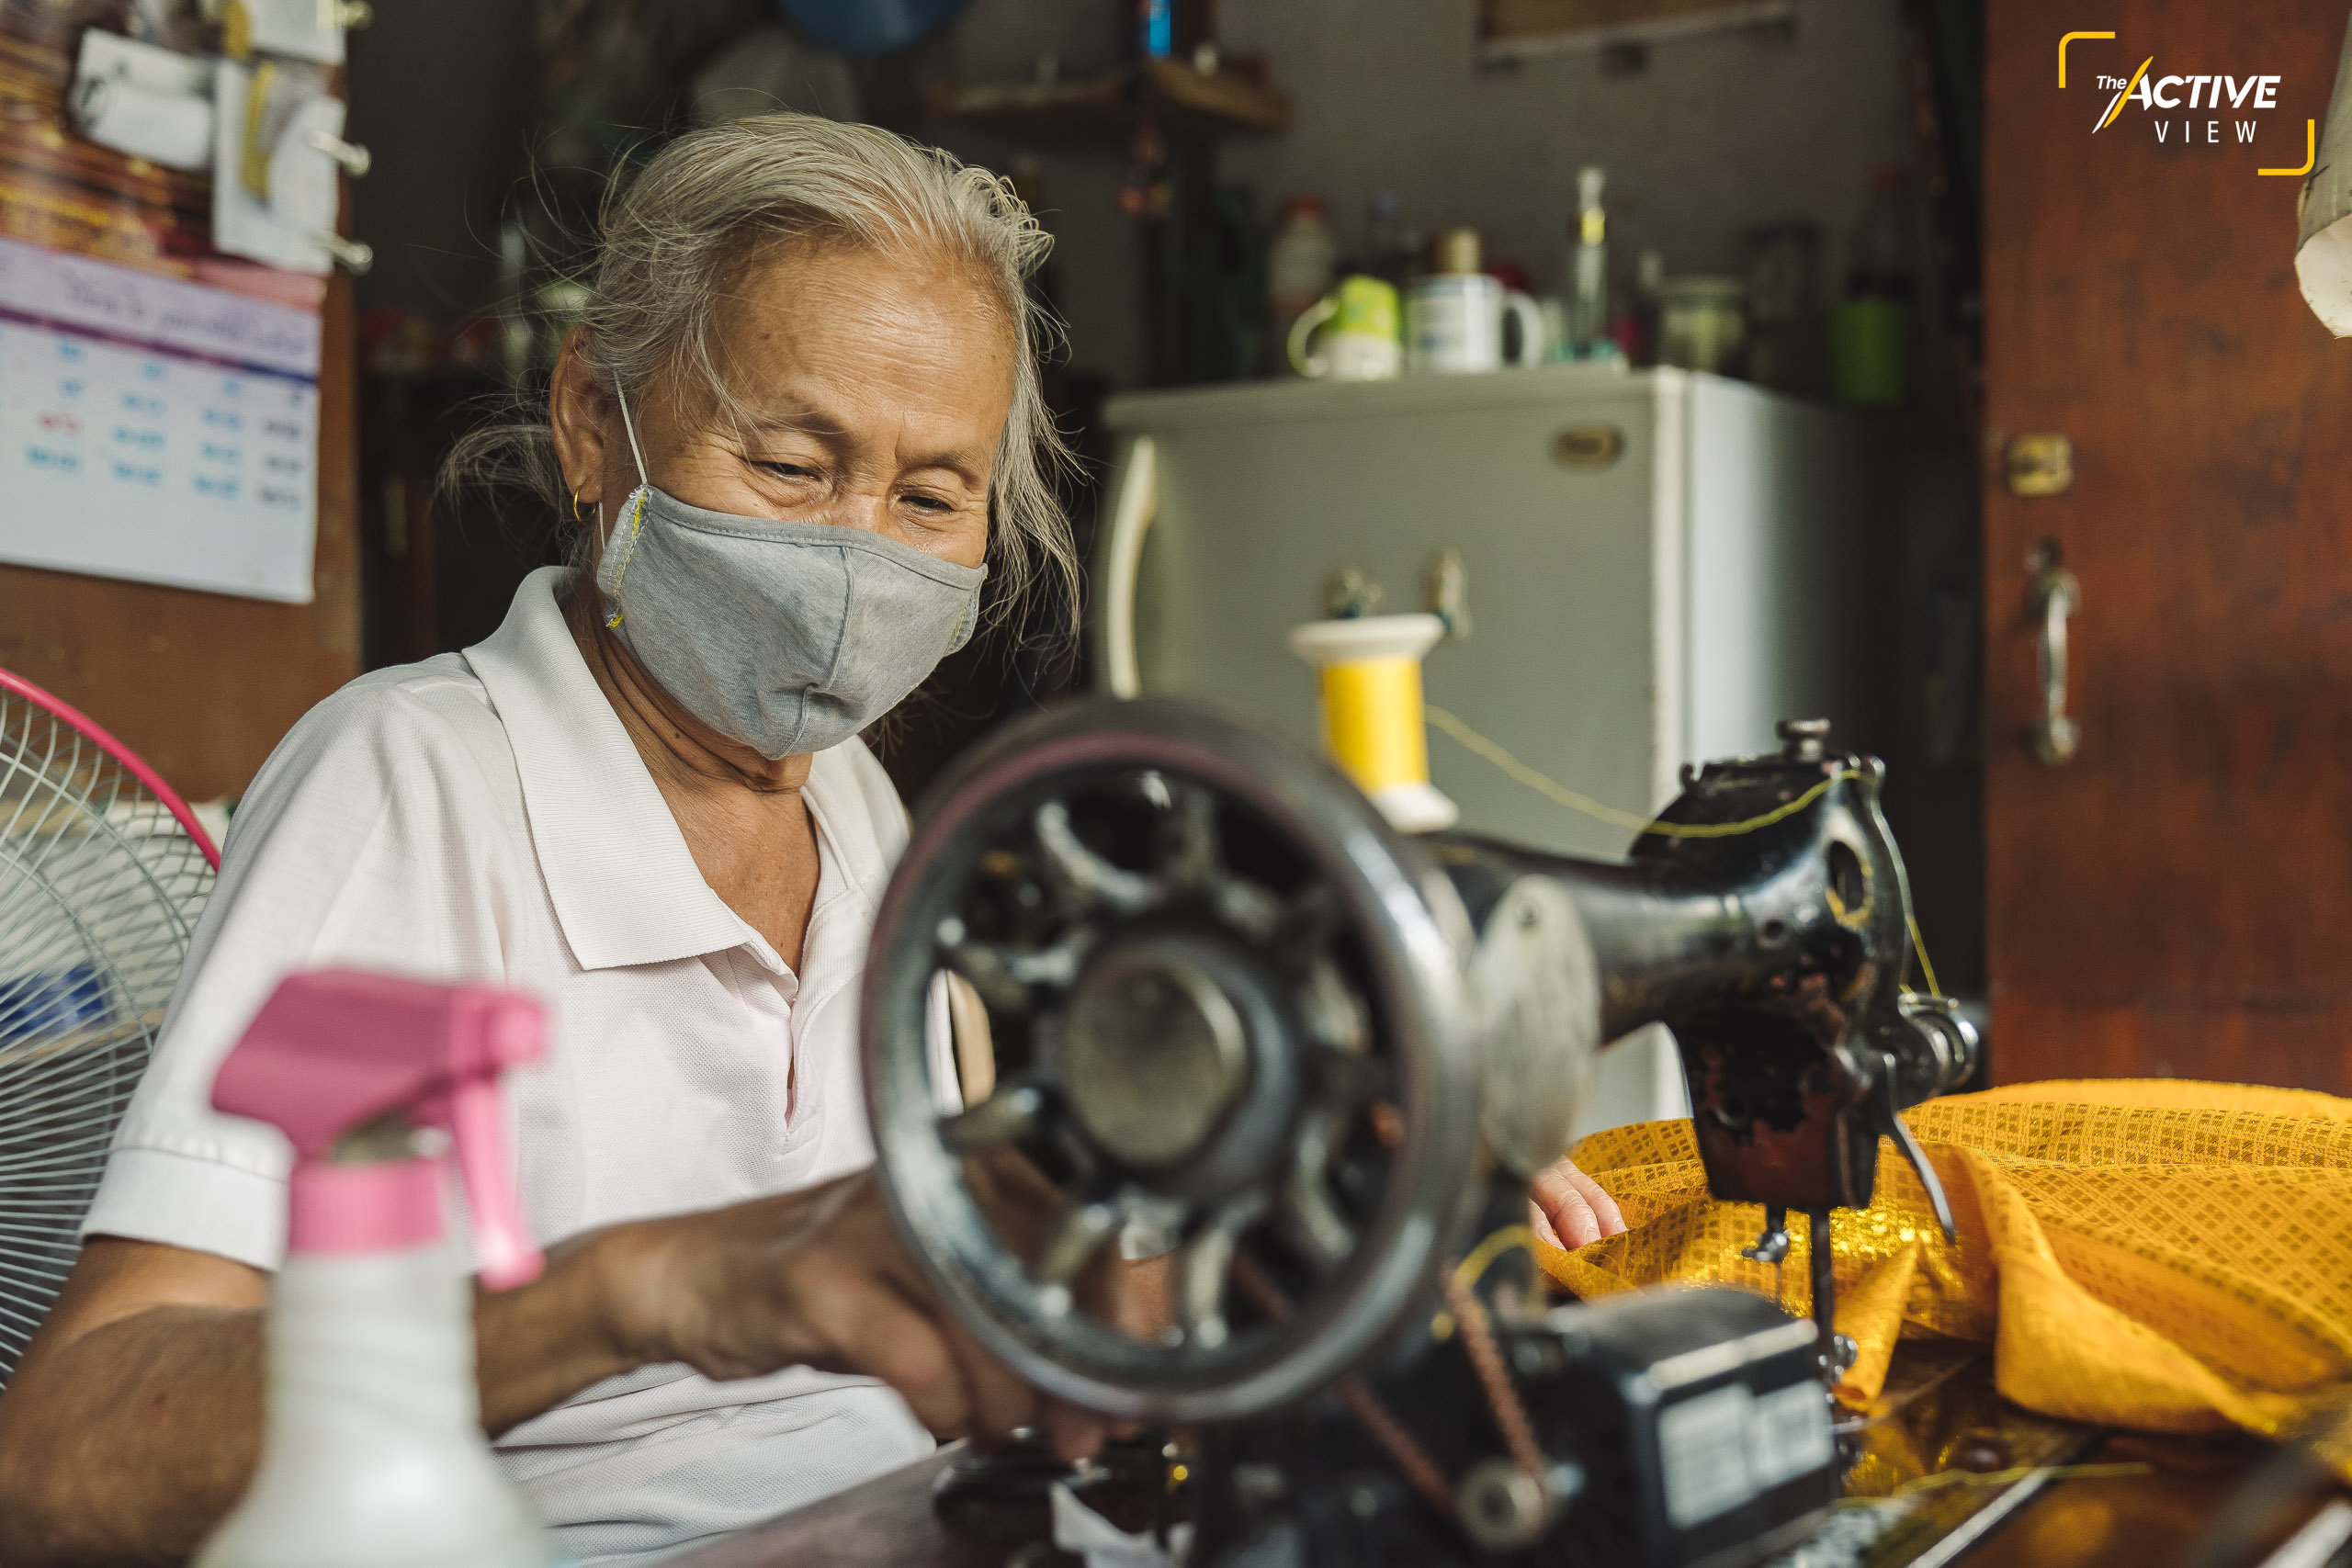 'สายหยุด วงศ์ตระกูล' วัย 68 ปี ใช้เวลากว่า 10 ปี อยู่ในชุมชนแออัด บนที่ดินการรถไฟแห่งประเทศไทย (รฟท.) ย่านมักกะสัน 
.
ในอดีตเธอใช้แรงงานเป็นสาวเย็บผ้า ตัดเย็บเสื้อโหล ทักษะและเครื่องมือทำมาหากินที่เหลือติดตัว ถูกนำมาใช้รับจ้างเย็บผ้าราคาถูกให้กับคนในชุมชน 